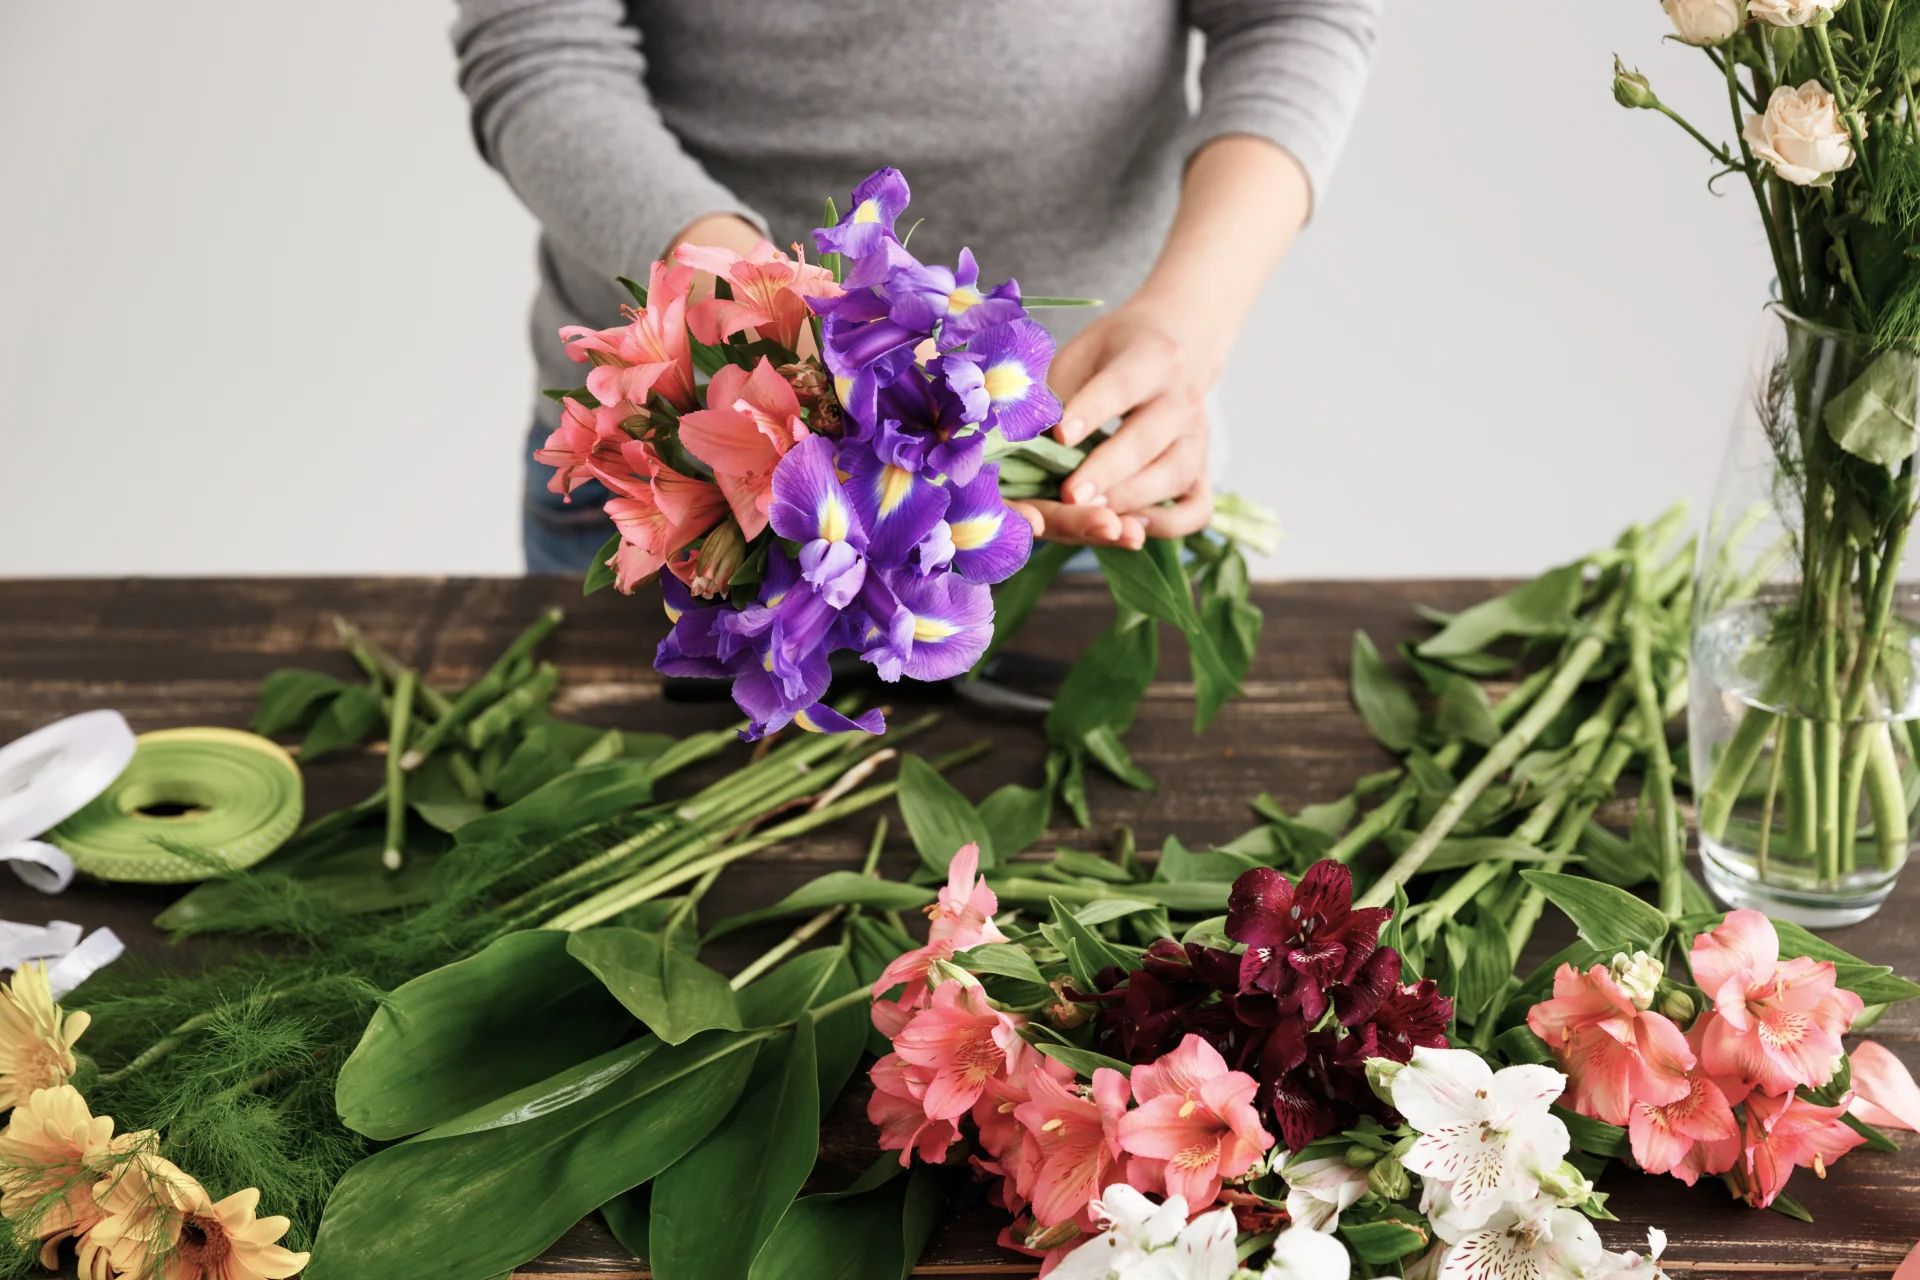 florist-making-bouquet-flowers-vase